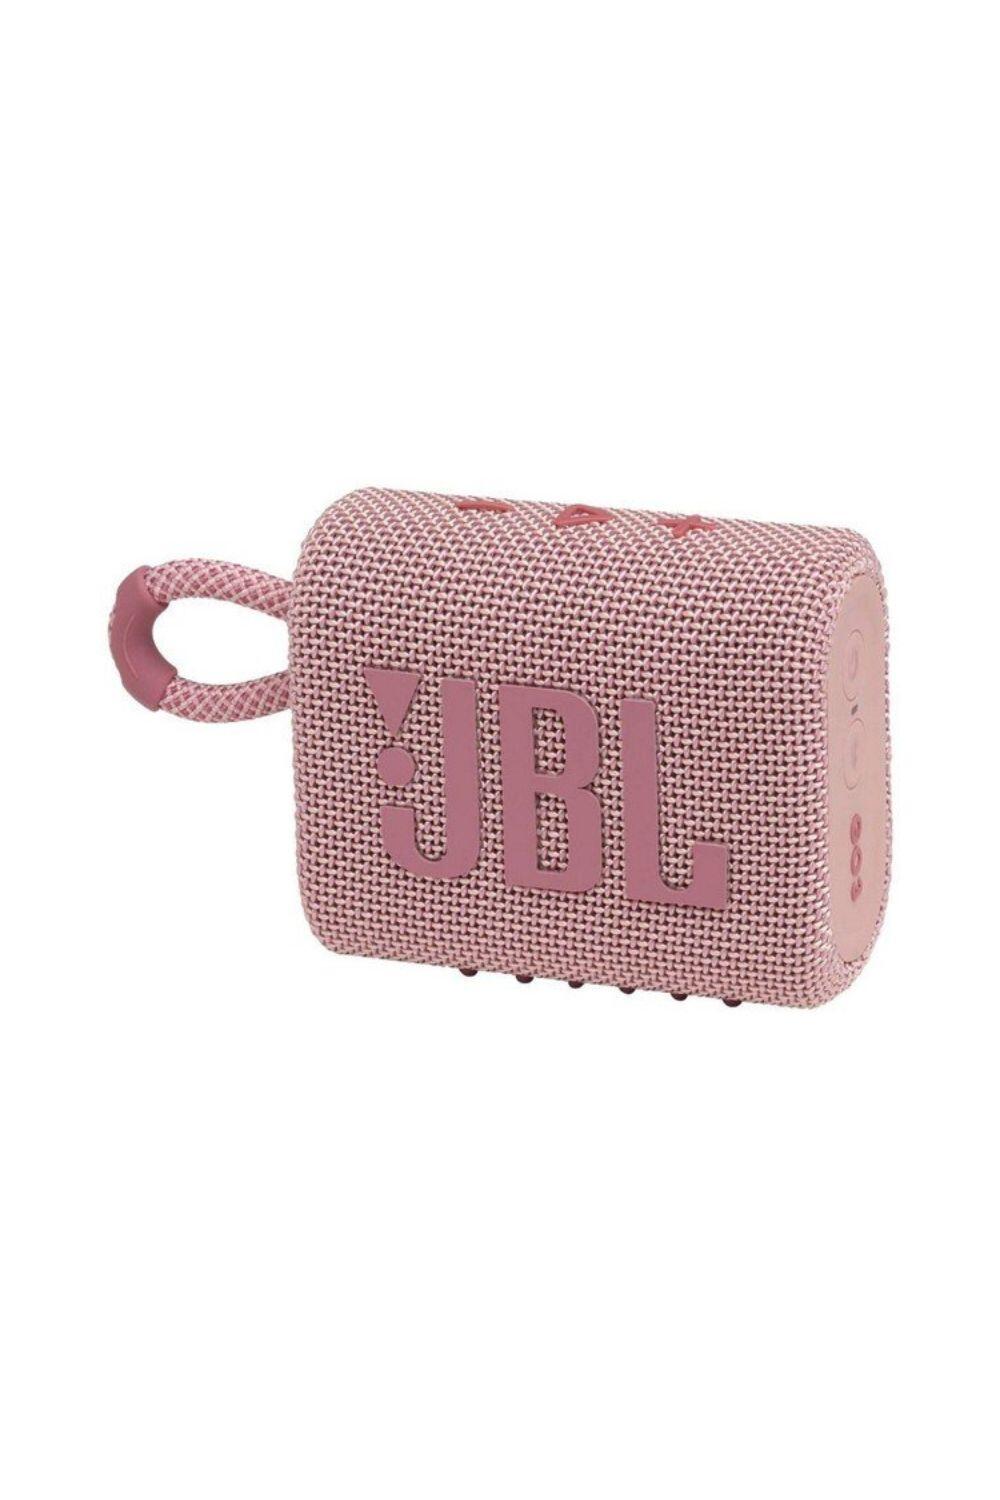 JBL JBL GO 3 Waterproof/Dustproof Wireless Bluetooth Speaker